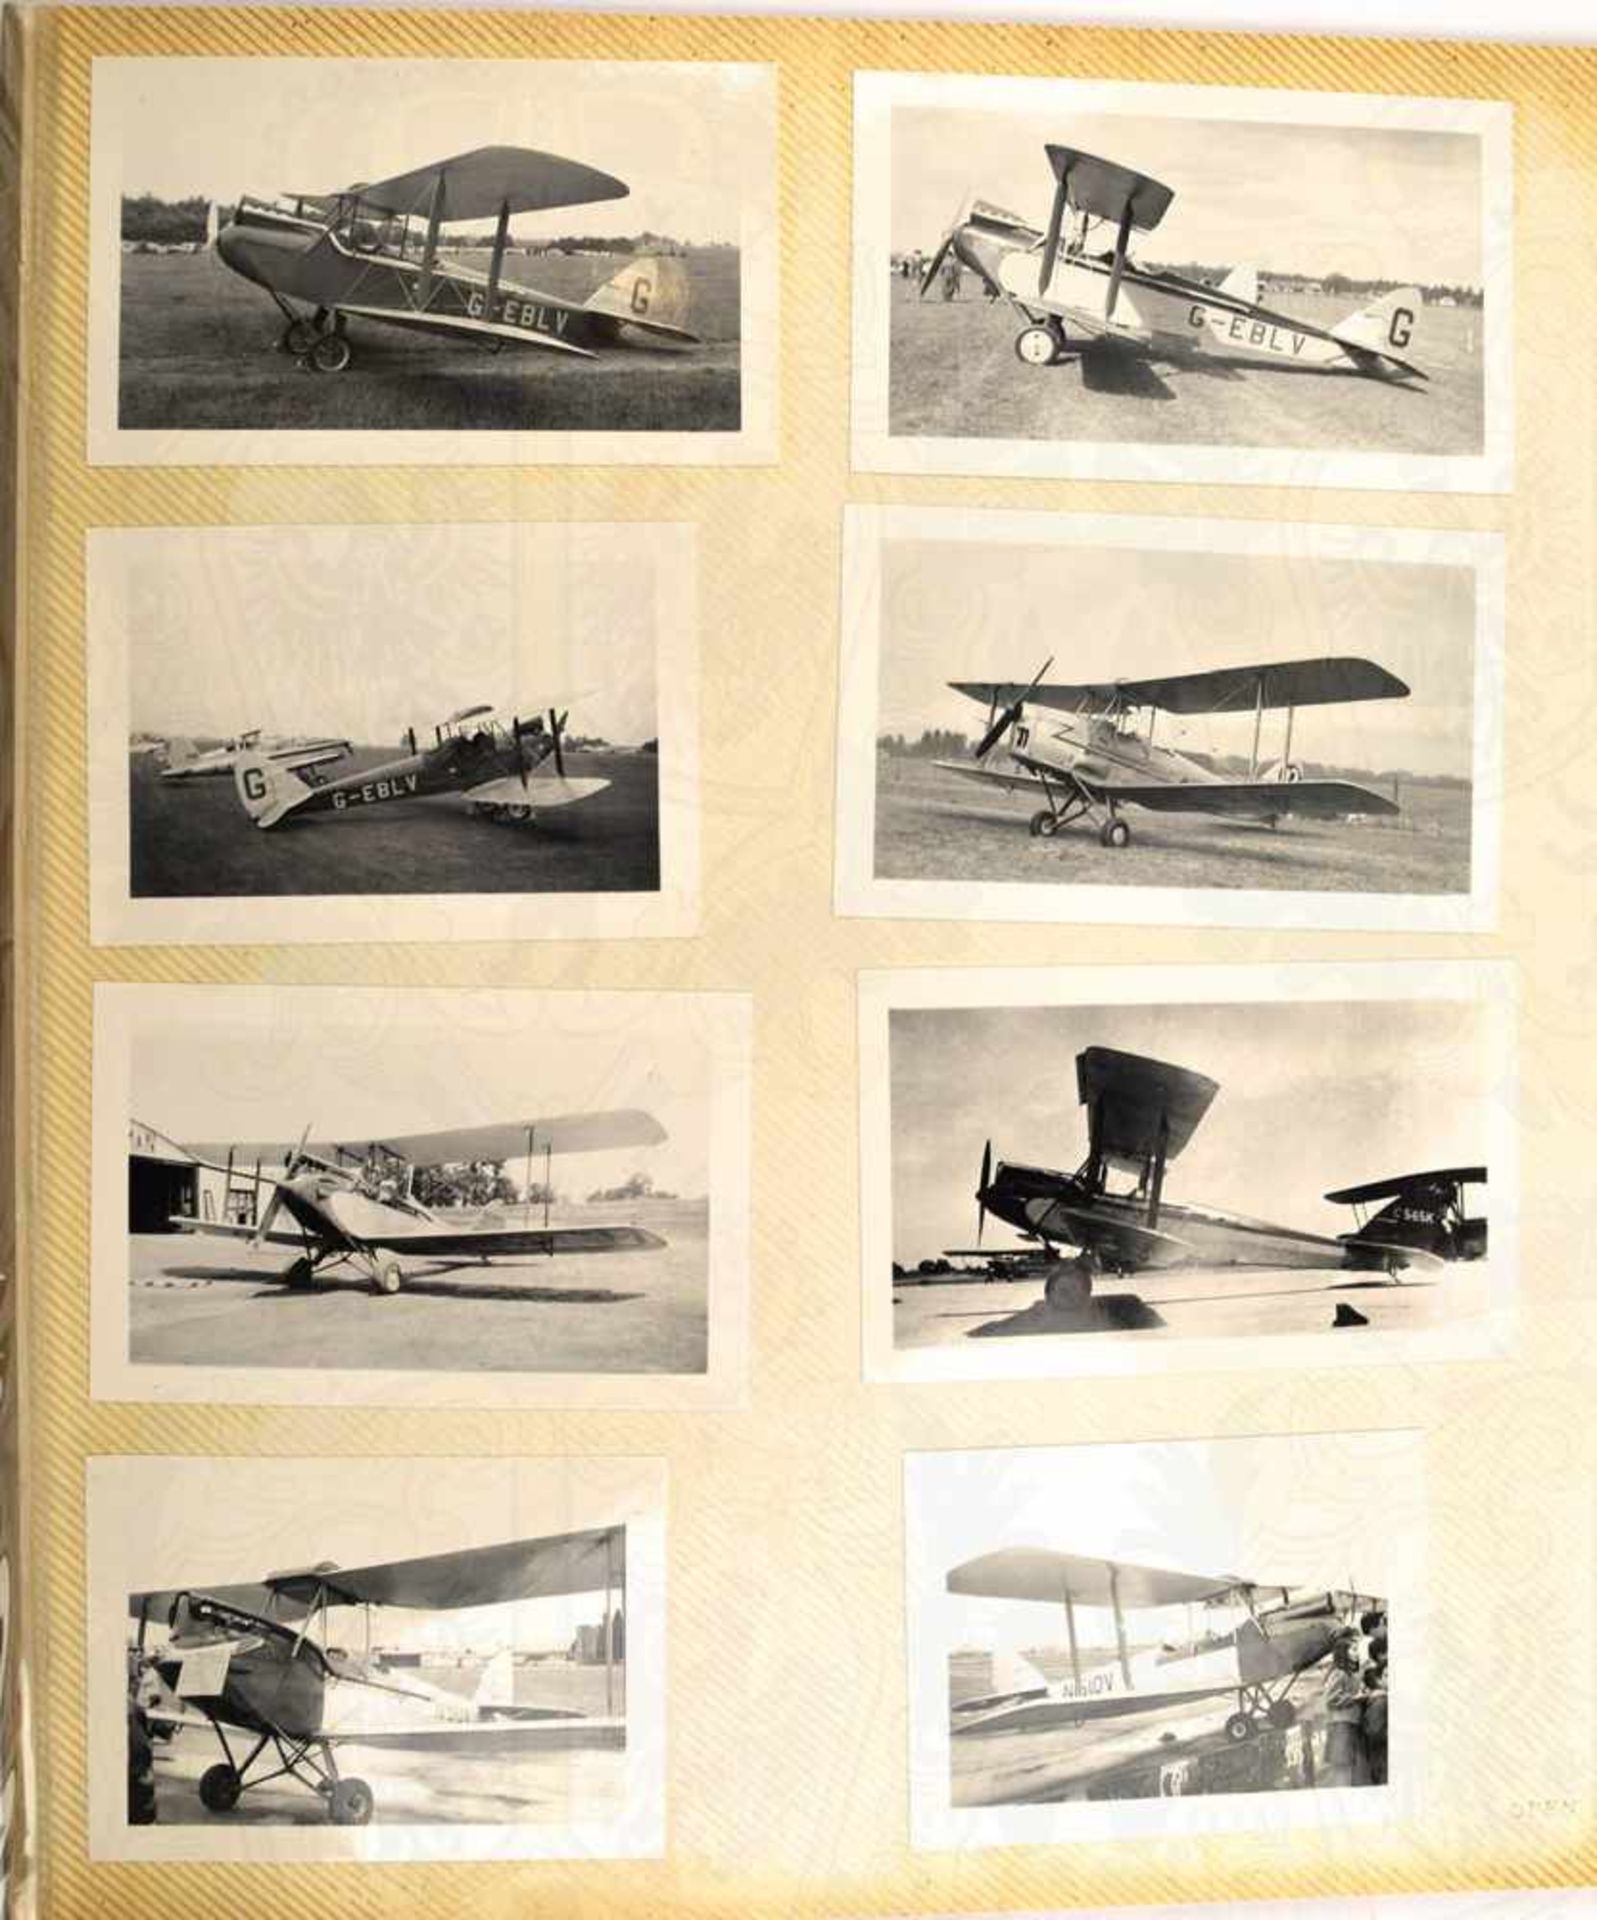 2 FOTOALBEN, mit 320 Fotos v. Aufklärungs-, Trainings-, Sport- und Charterflugzeugen etc., meist - Bild 3 aus 5